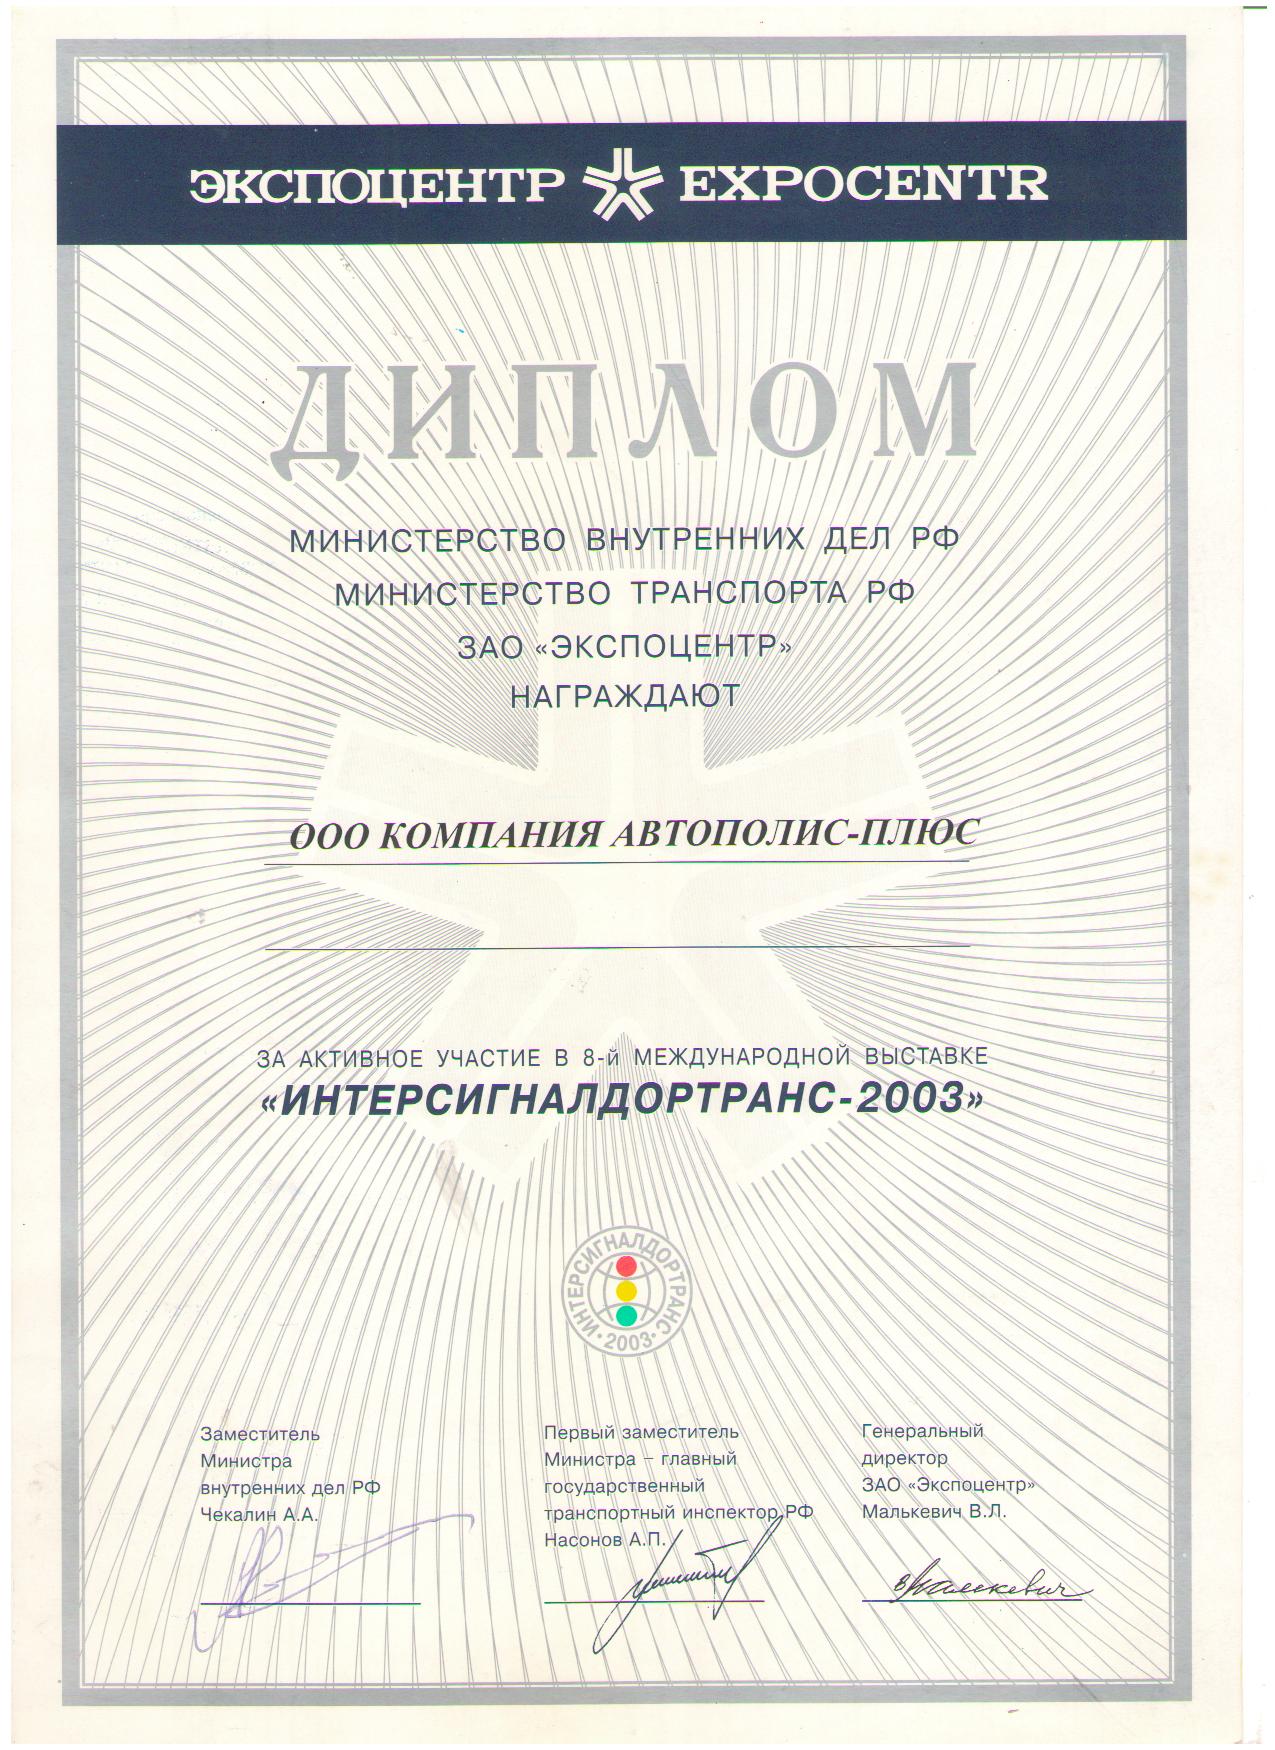 Диплом за участие в 8-й Международной выставке "Интерсигналдортранс-2003"